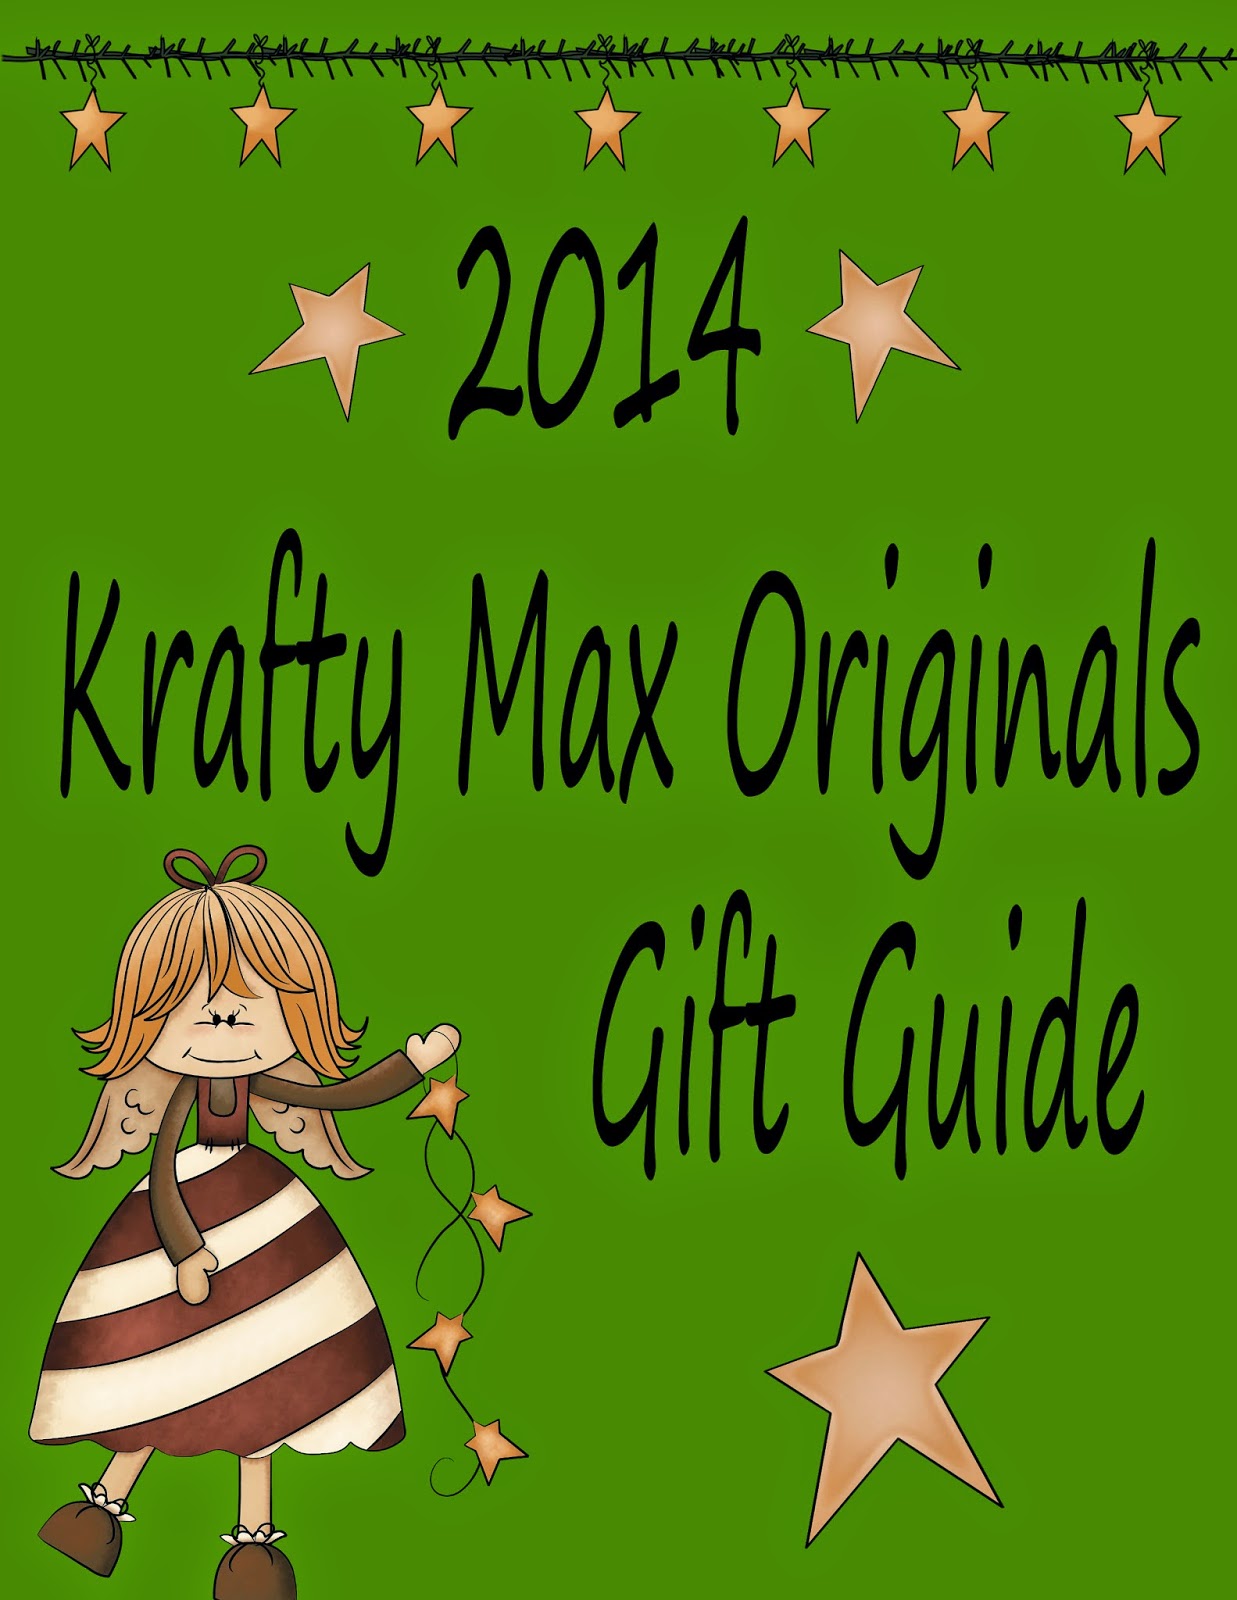 http://slipp.it/KraftyMaxOriginals/179929-2014-krafty-max-originals-gift-guide